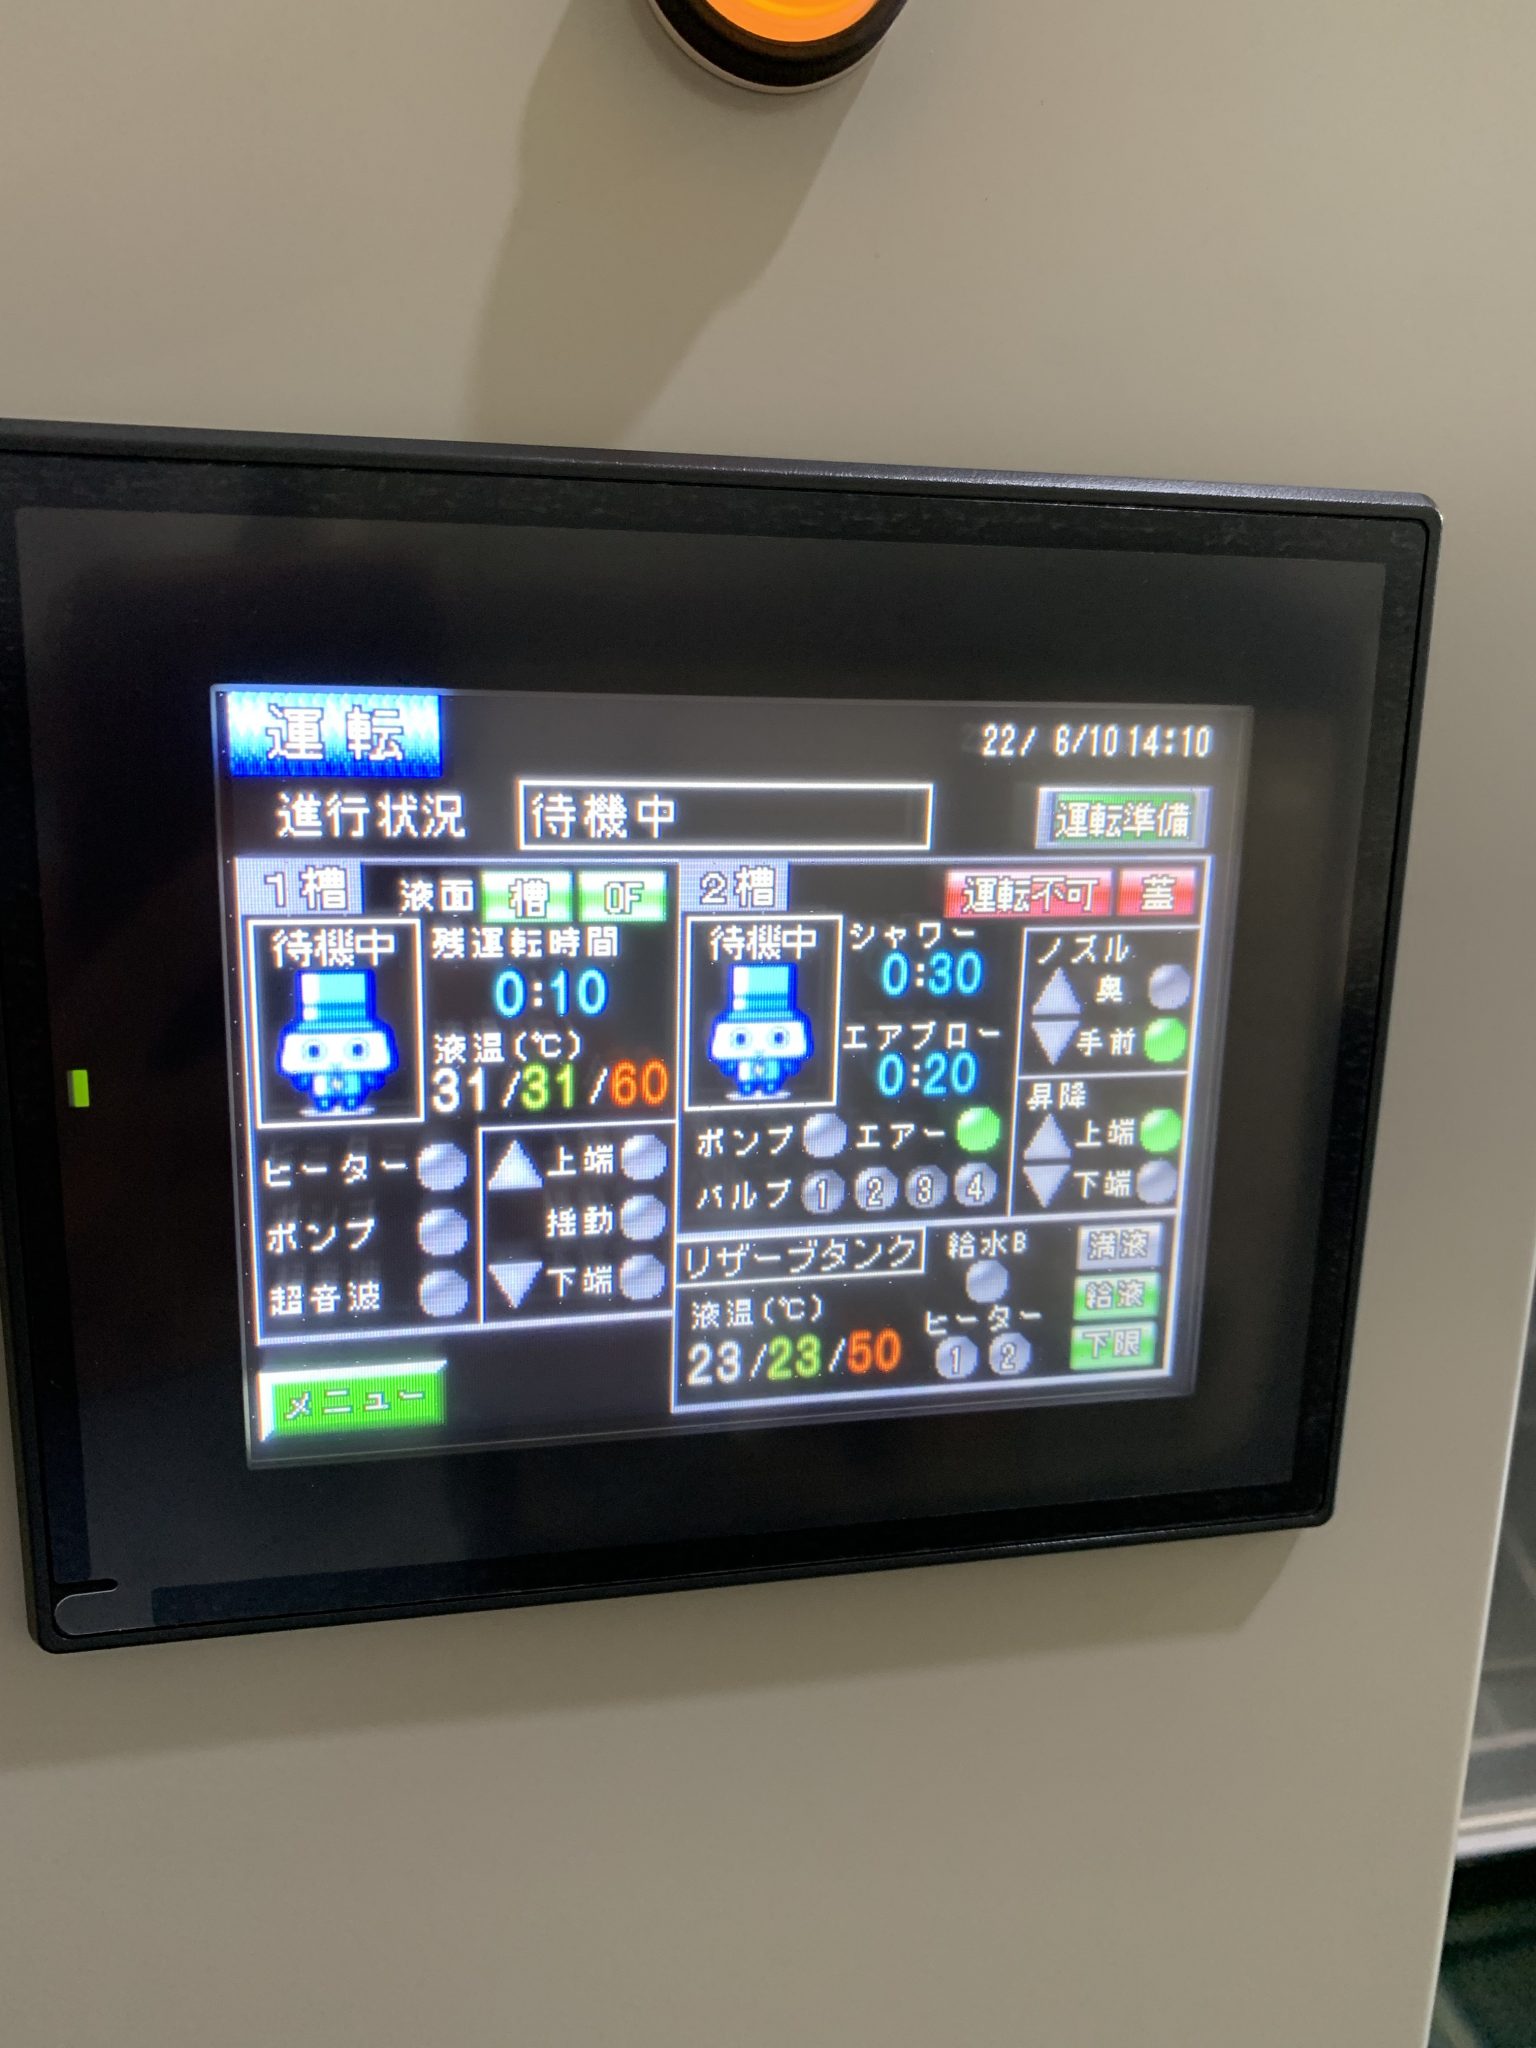 揺動2槽式超音波＋シャワー洗浄装置 | 日本アレックス製品情報